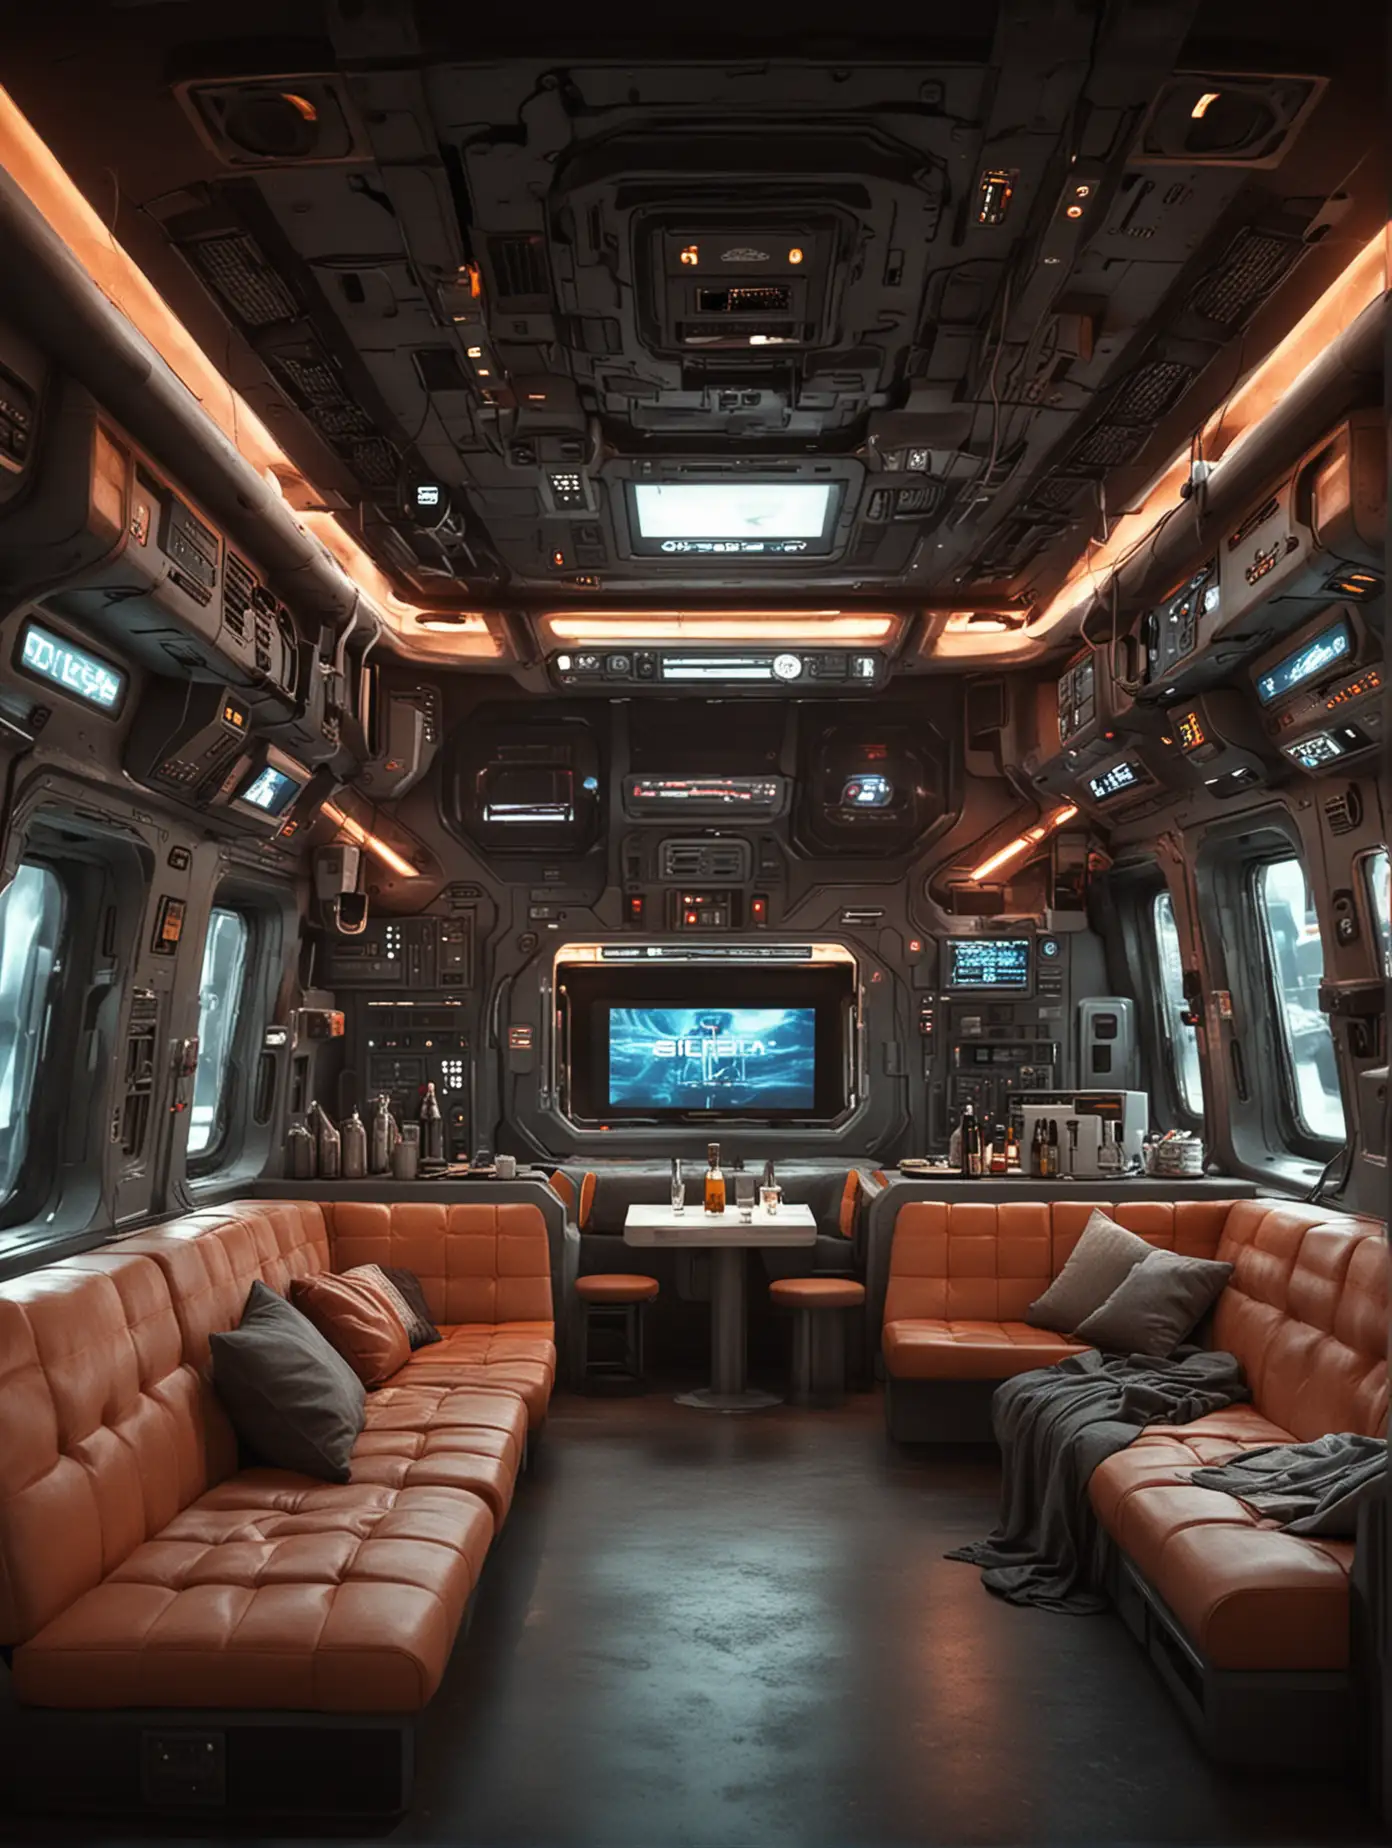 Futuristic-SciFi-Interior-with-Big-Screens-Sofa-Kitchen-and-Bar